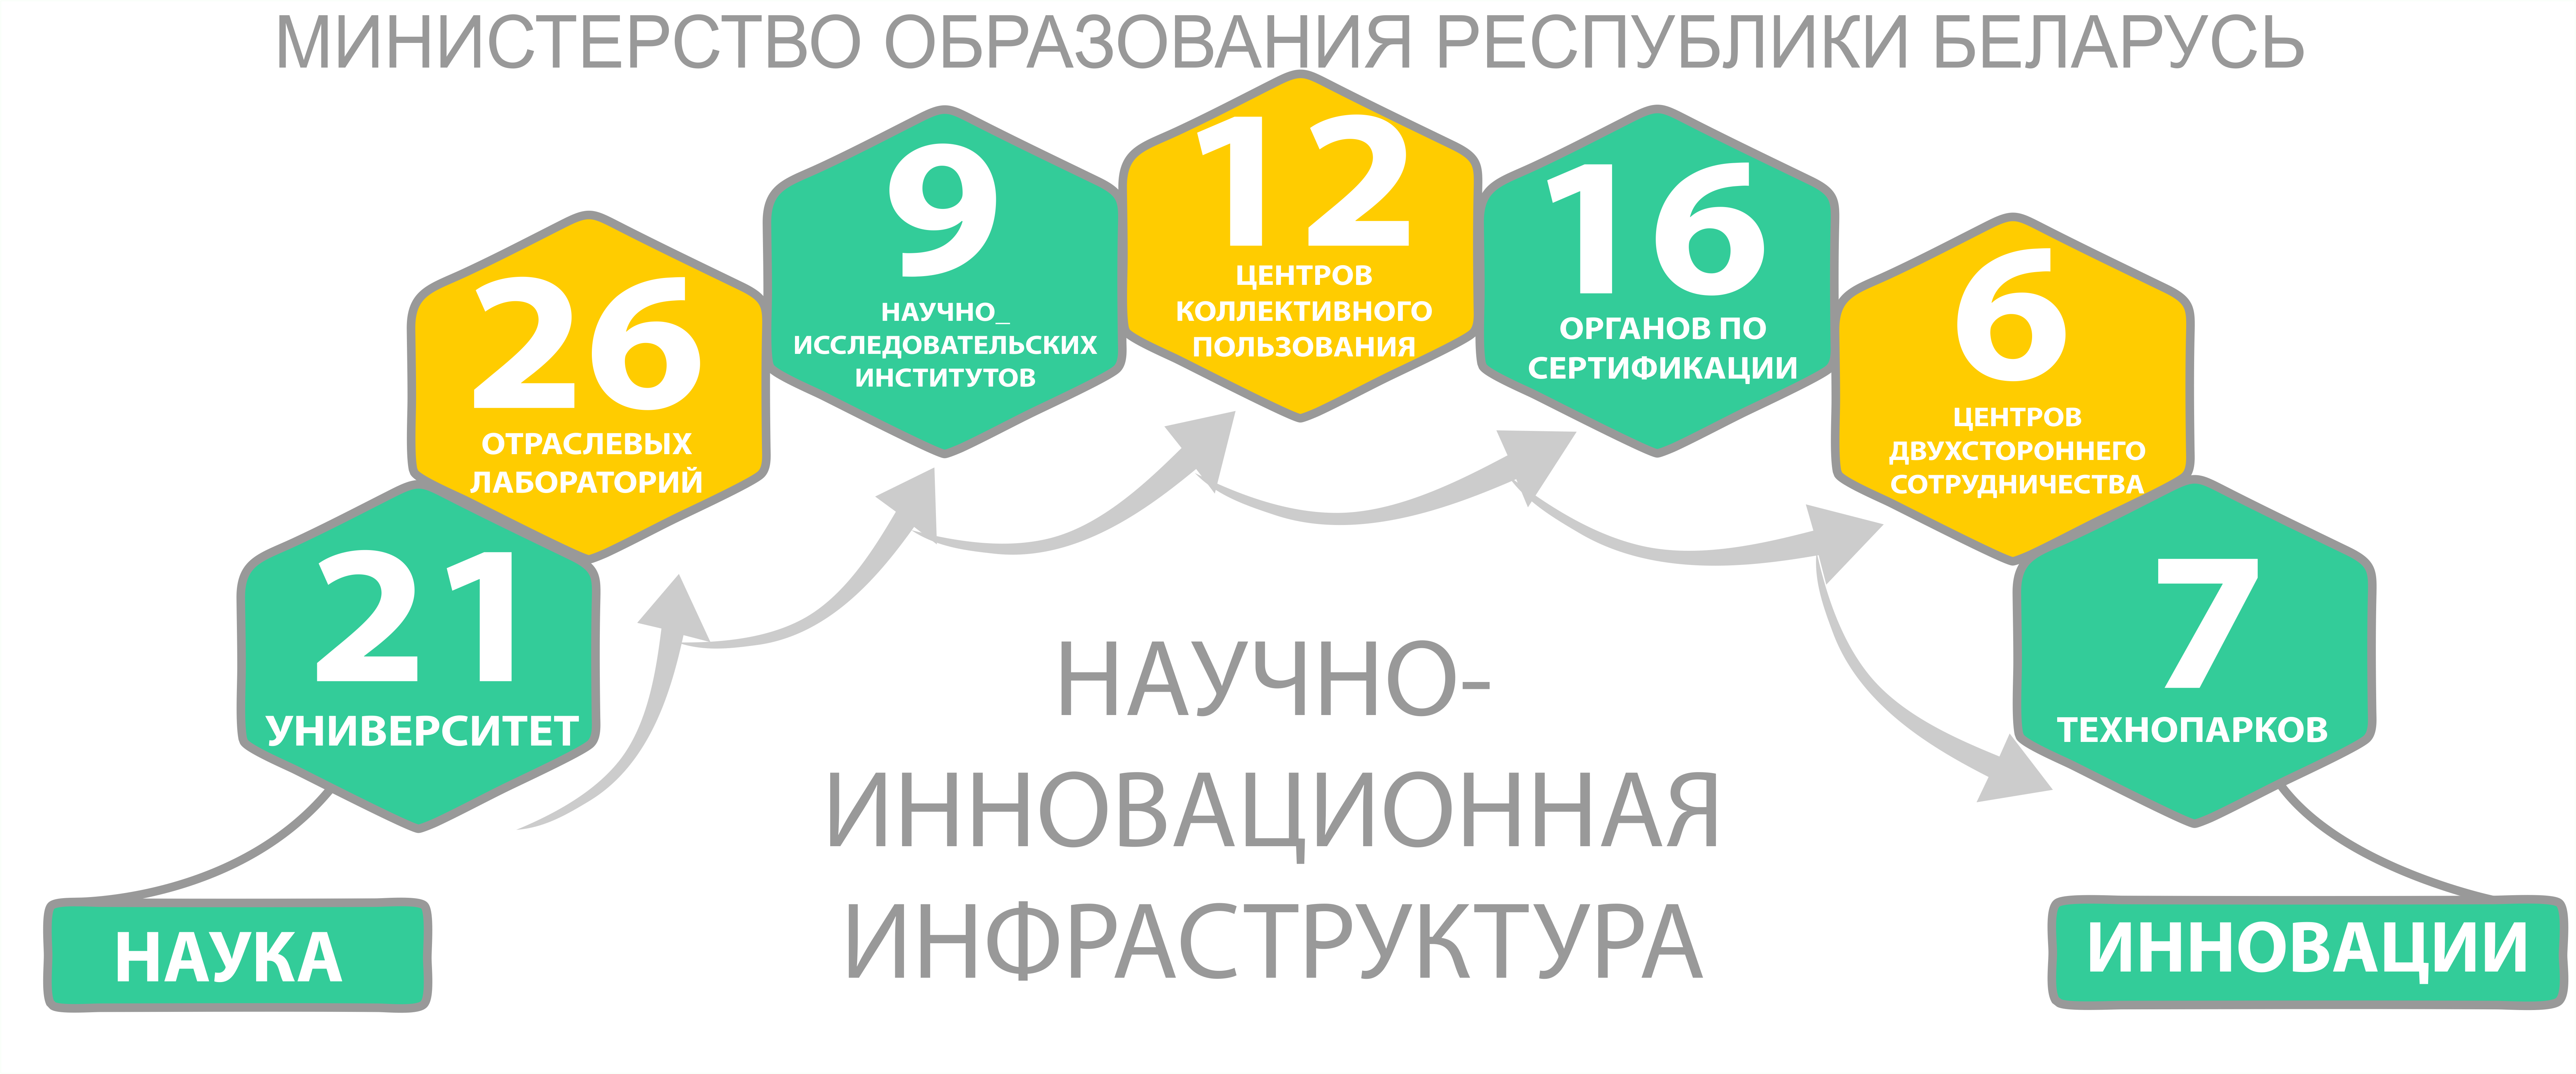 Научно-инновационная инфраструктура Министерства образования в Республике Беларусь